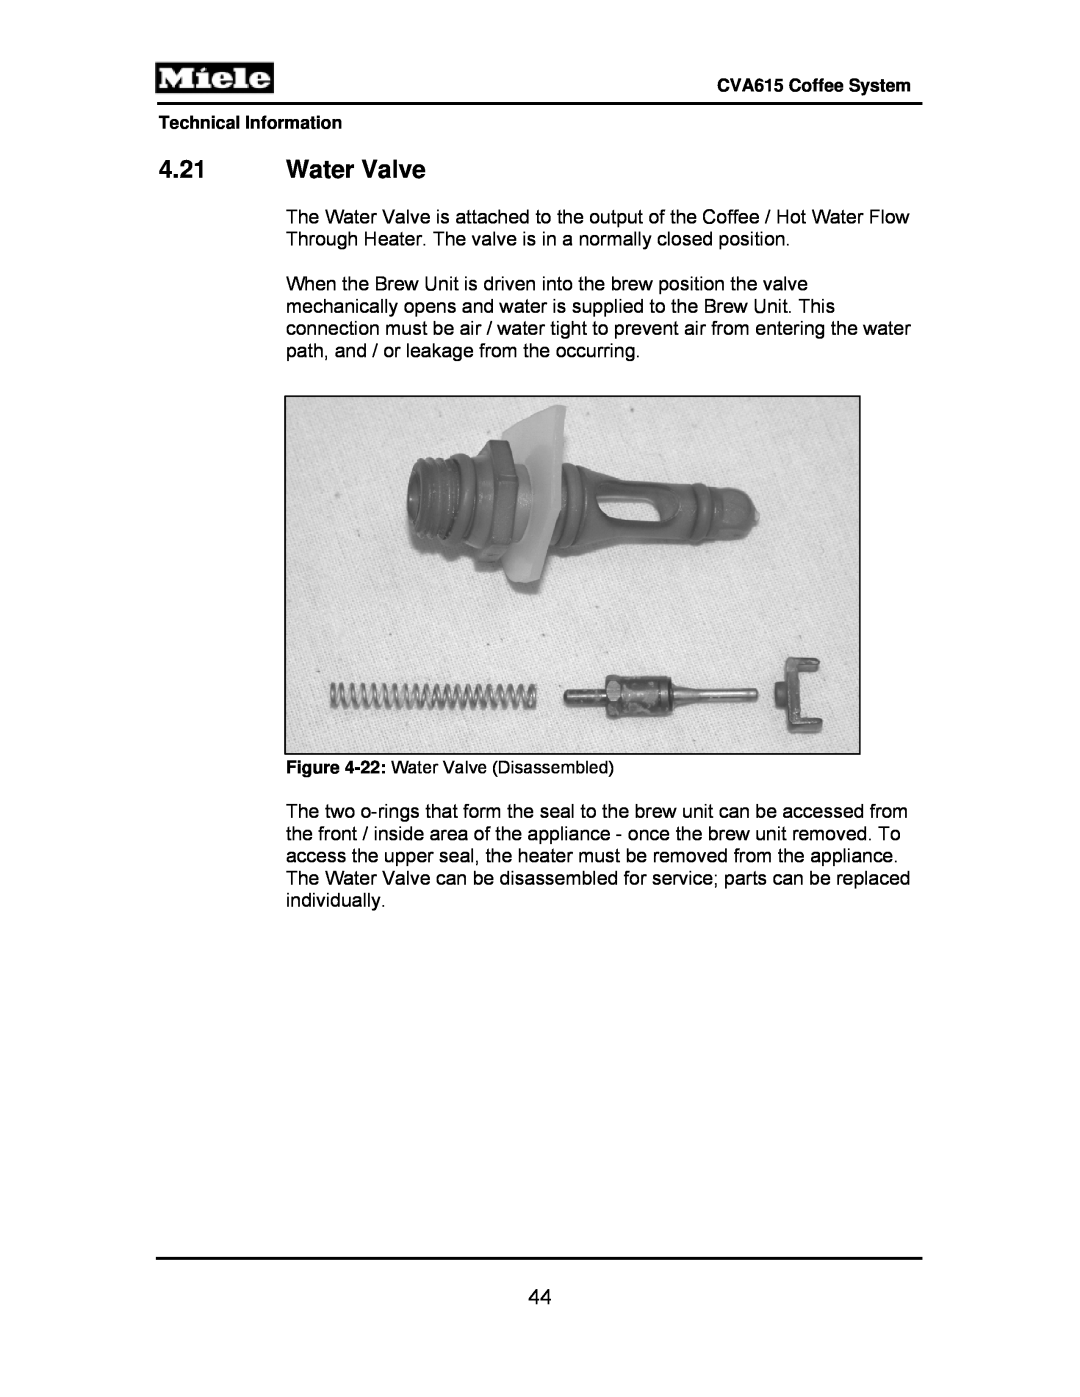 Miele CVA615 manual 4.21Water Valve, 22: Water Valve Disassembled 